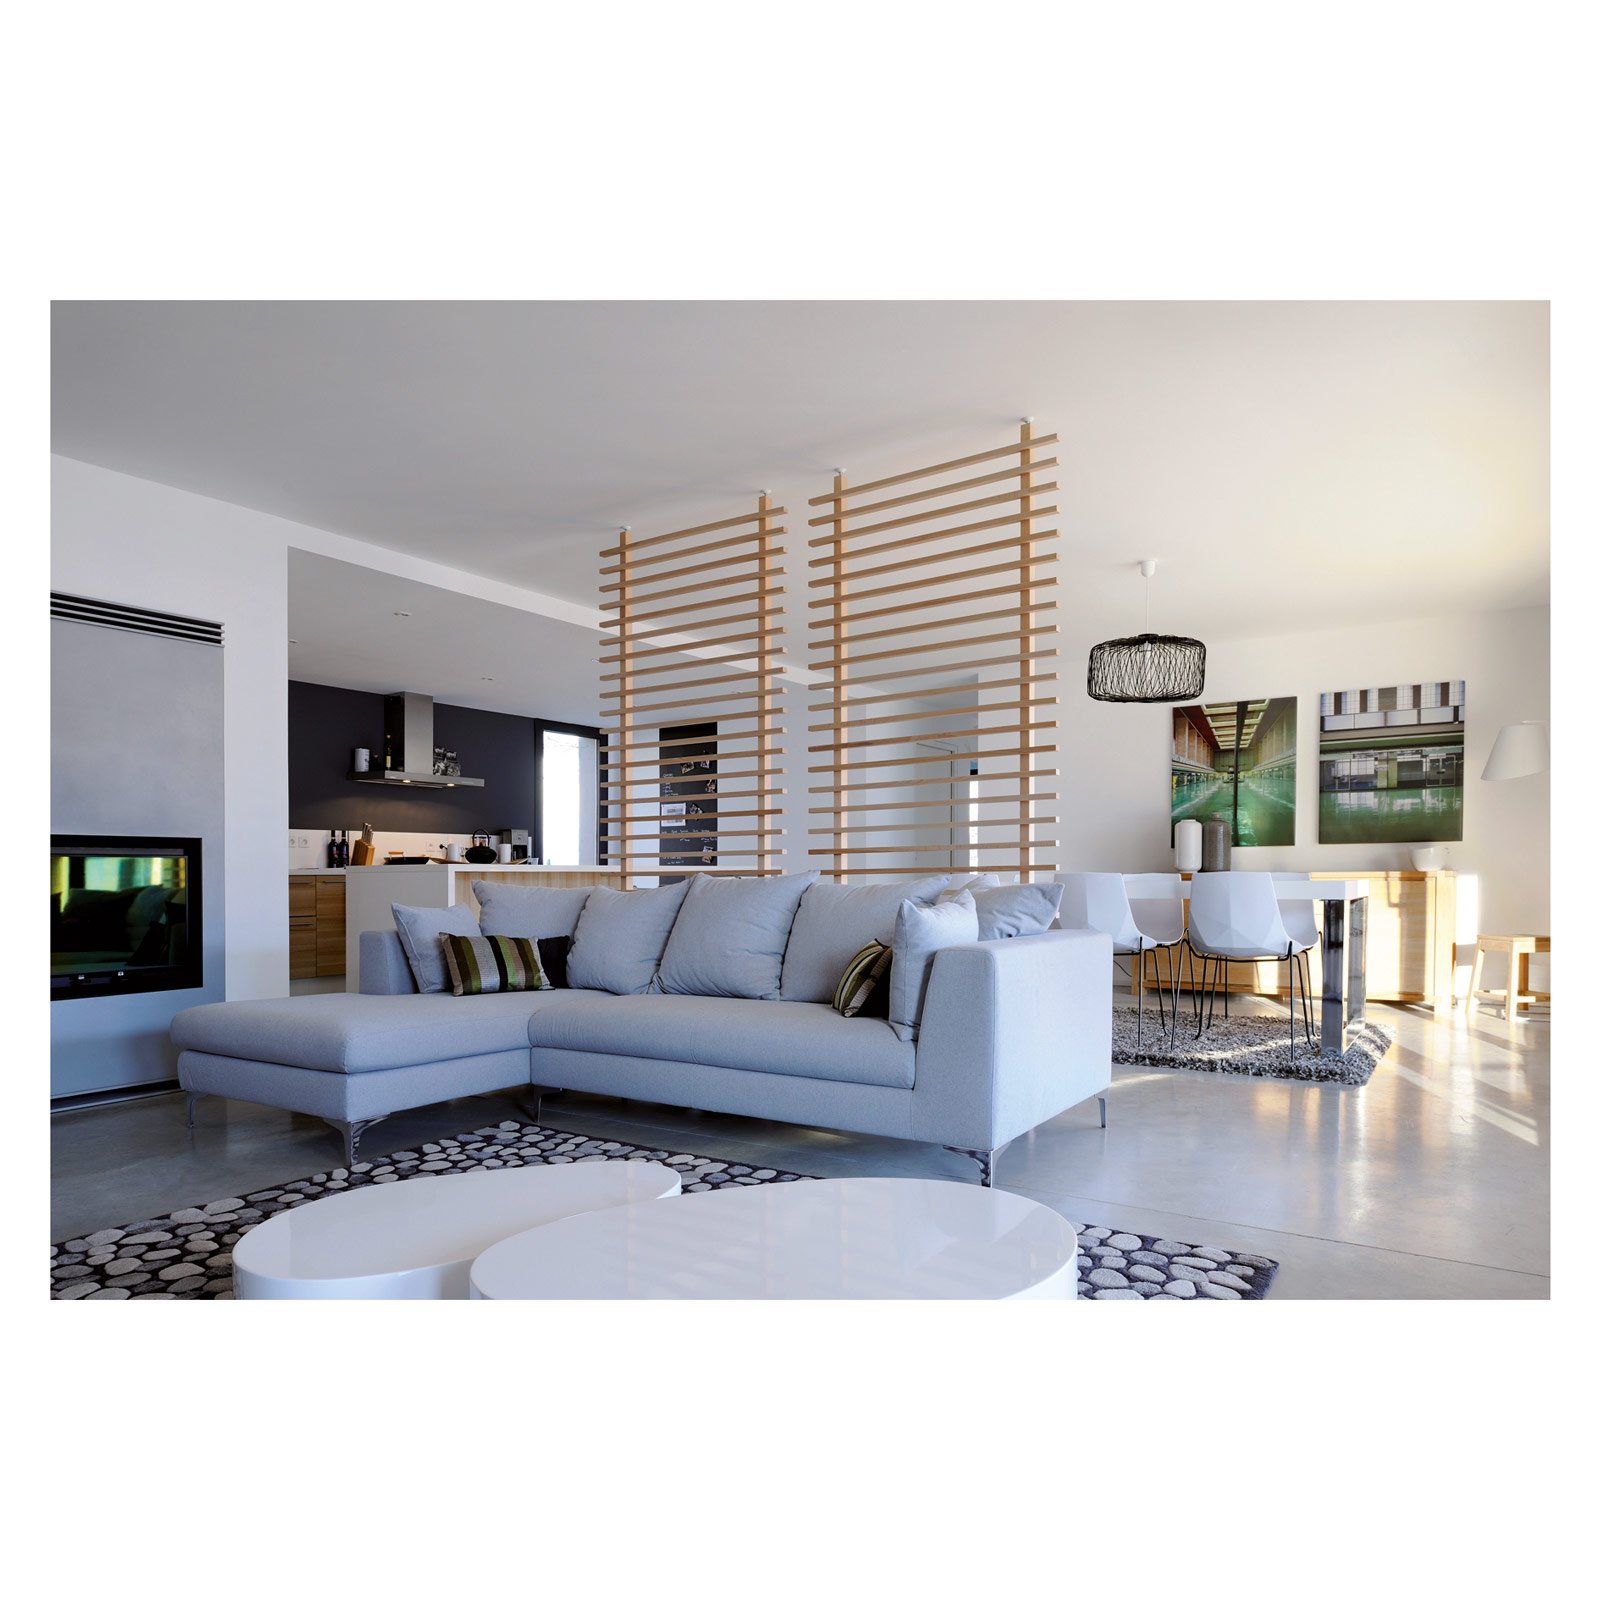 Casabook immobiliare recuperare spazio in casa soluzioni for Lampadario legno leroy merlin